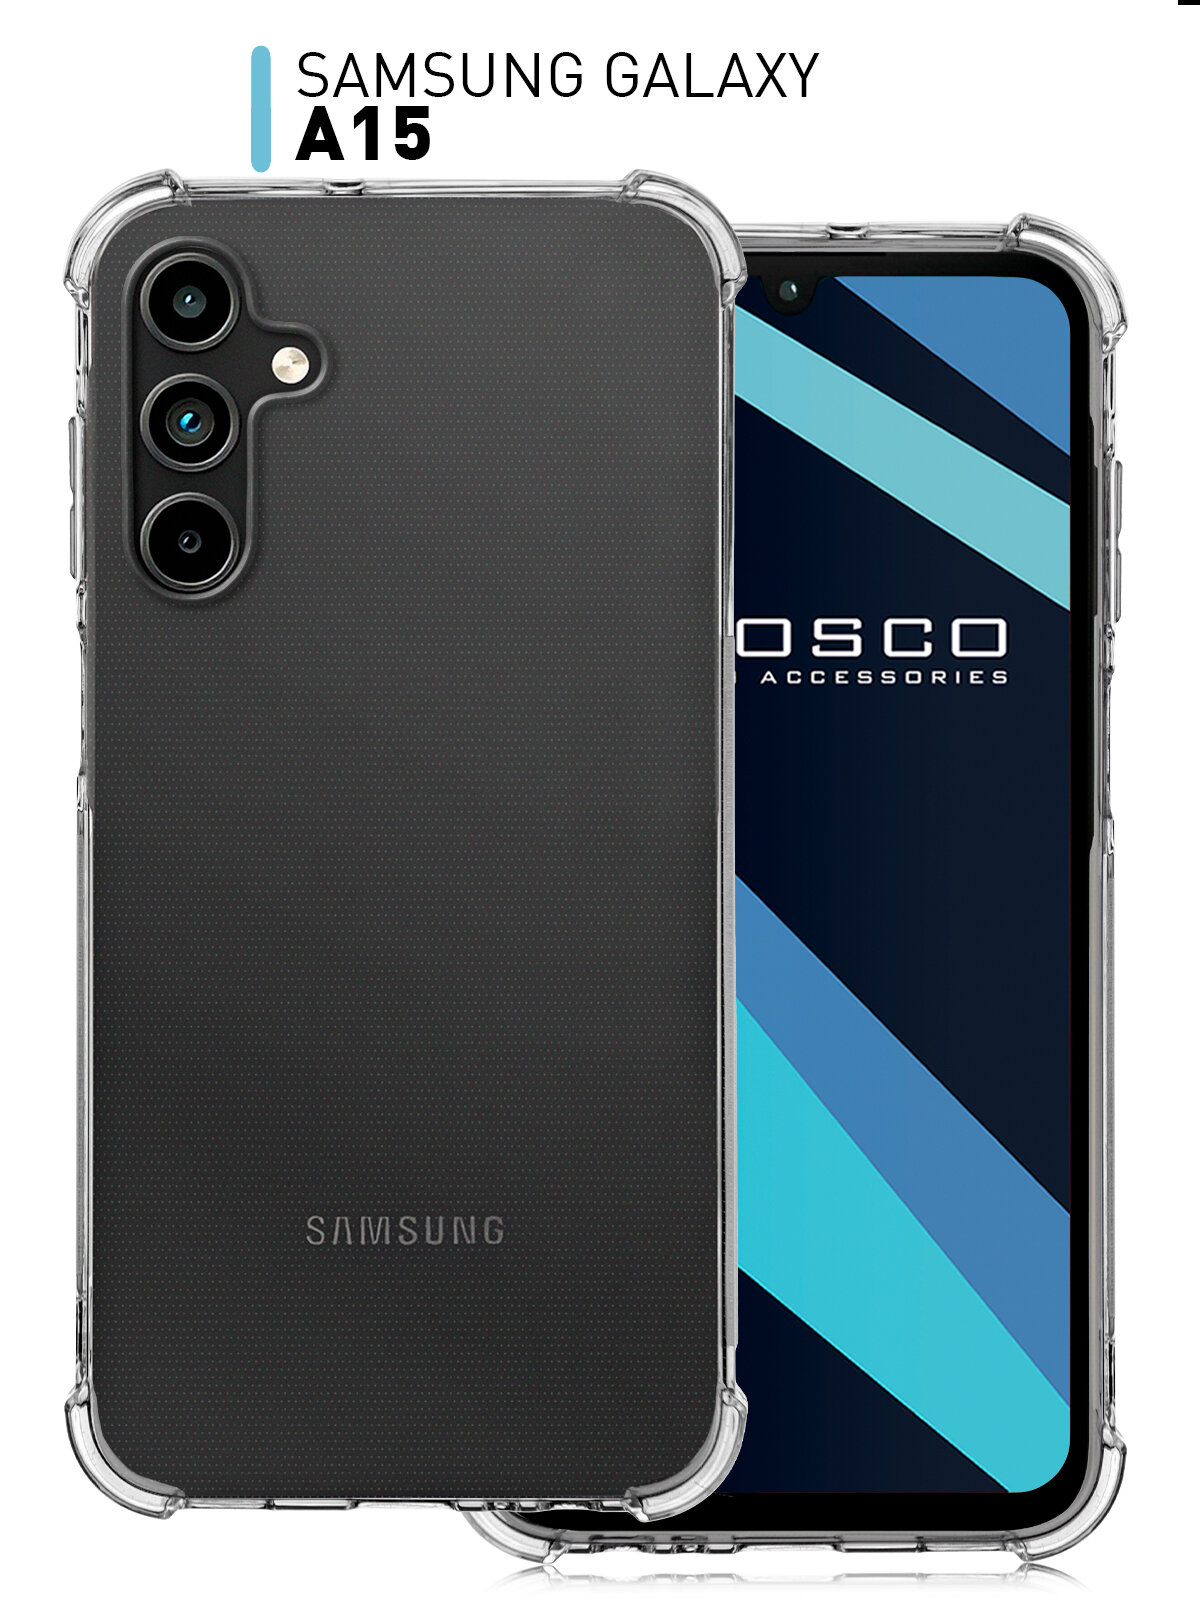 Противоударный чехол ROSCO на Samsung Galaxy A15 (Самсунг Галакси А15) усиленный, силиконовый чехол, защита модуля камер, прозрачный чехол